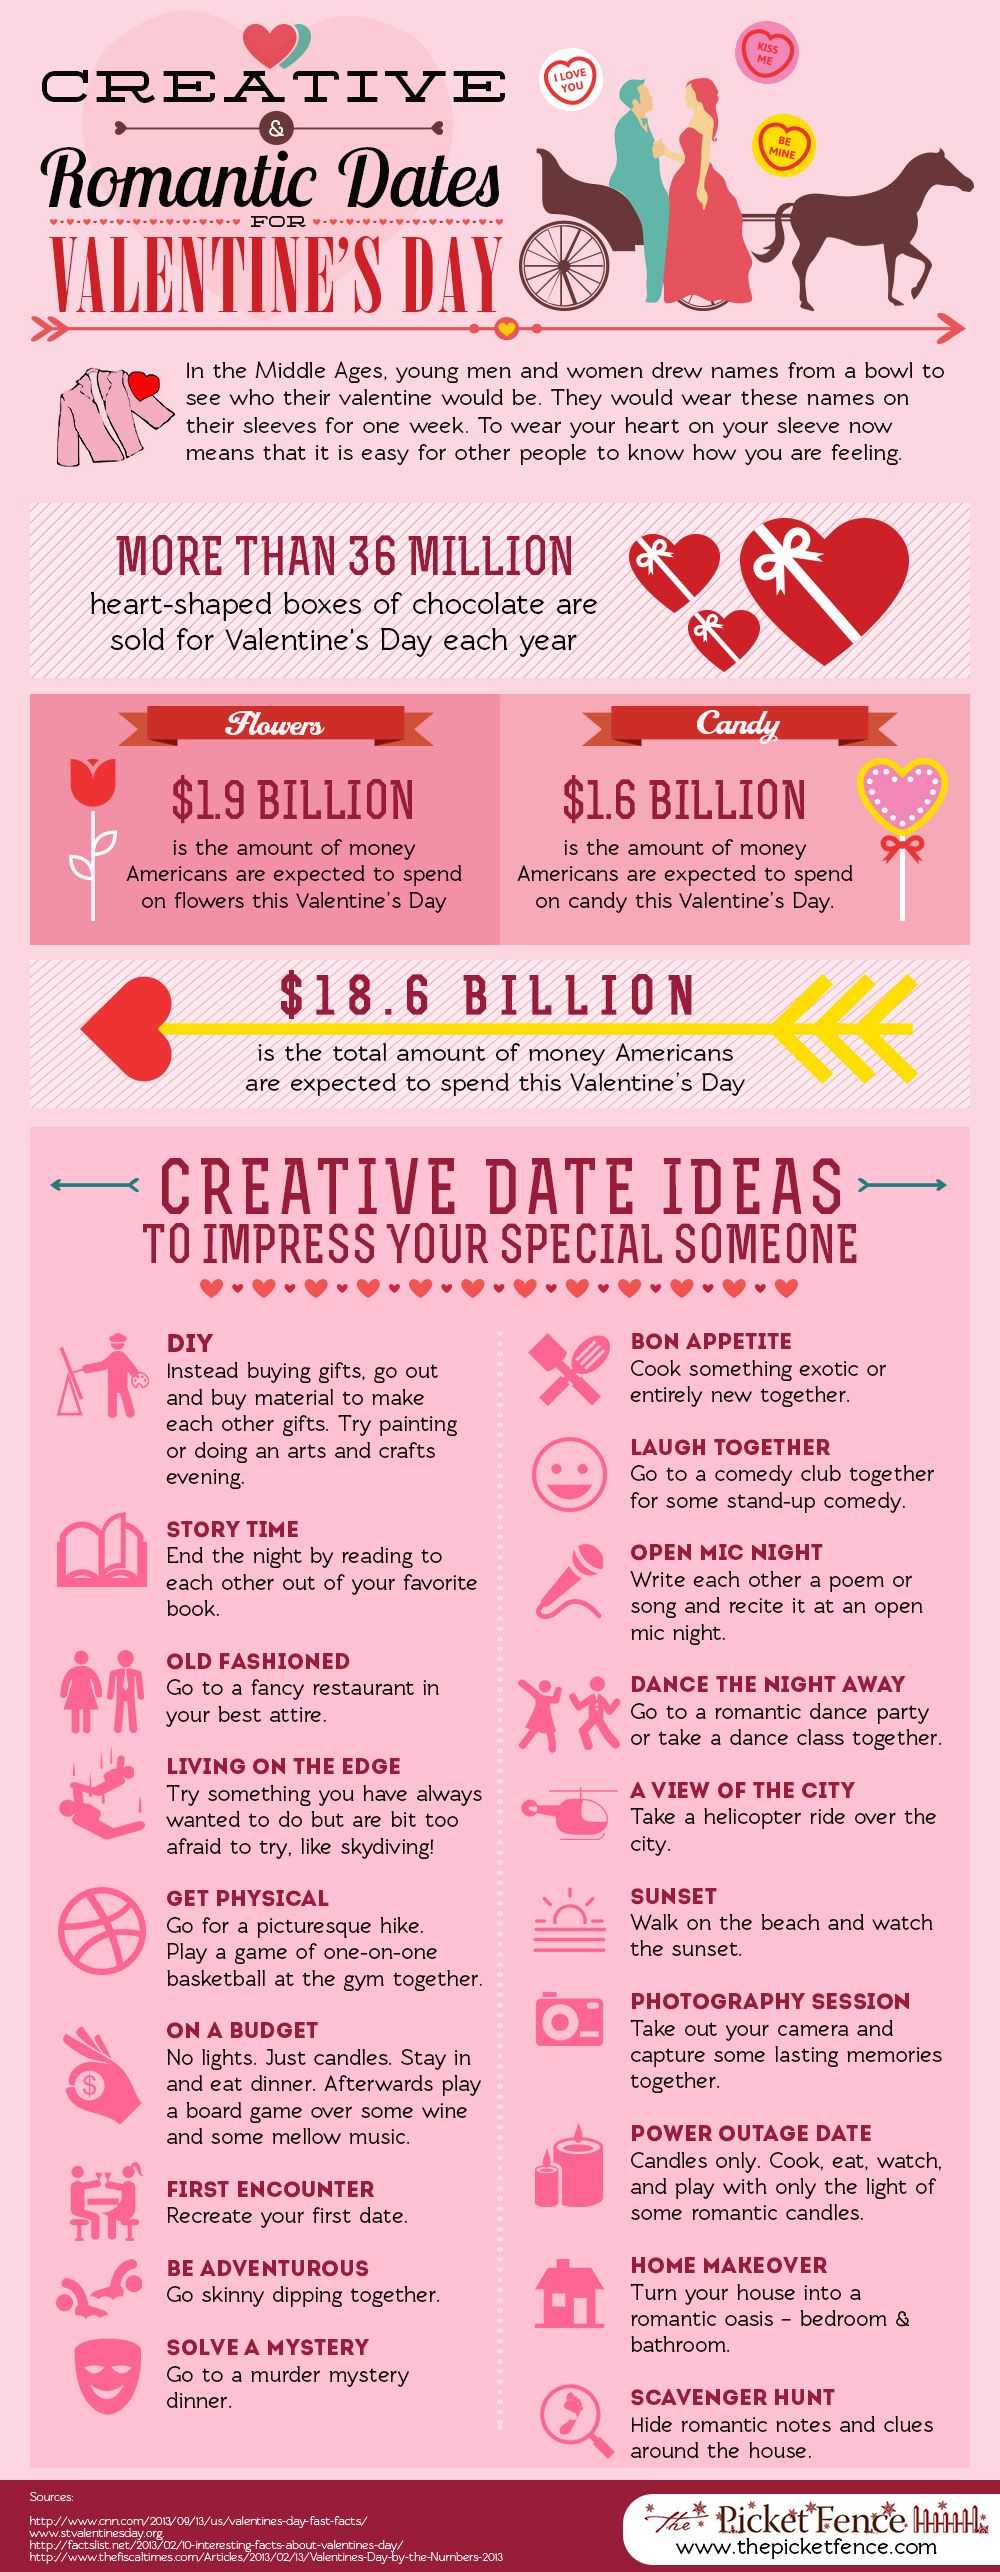 Creative Valentine's Day Date Ideas